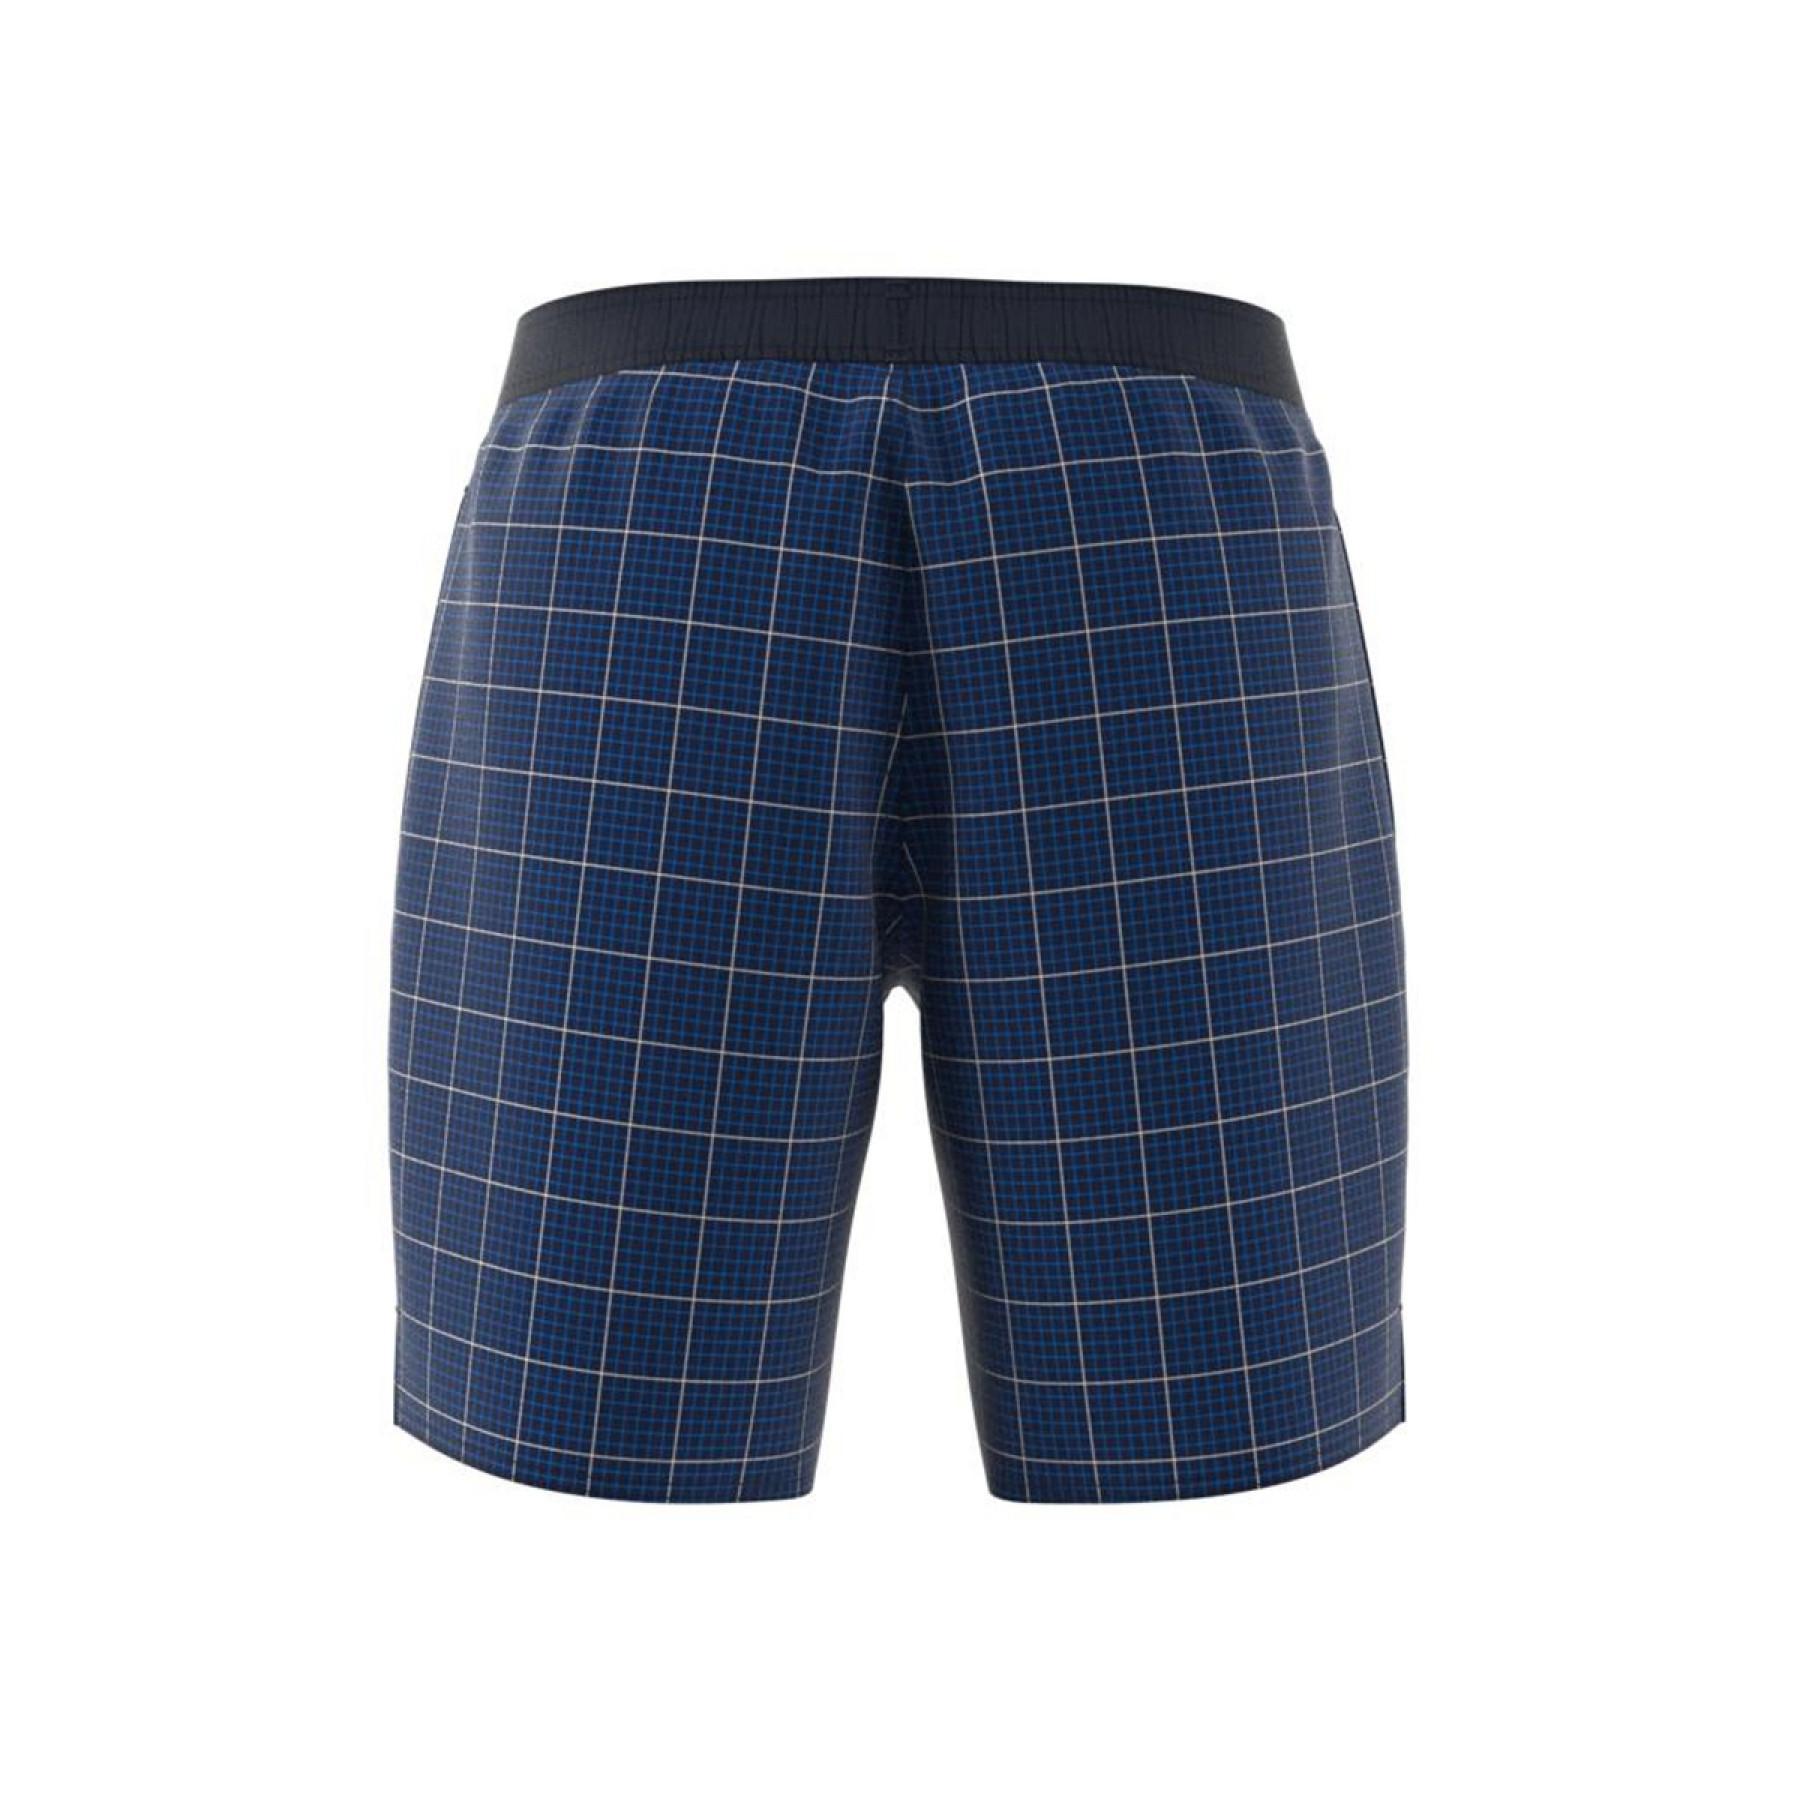 Pantalones cortos de natación adidas Classic Length Check